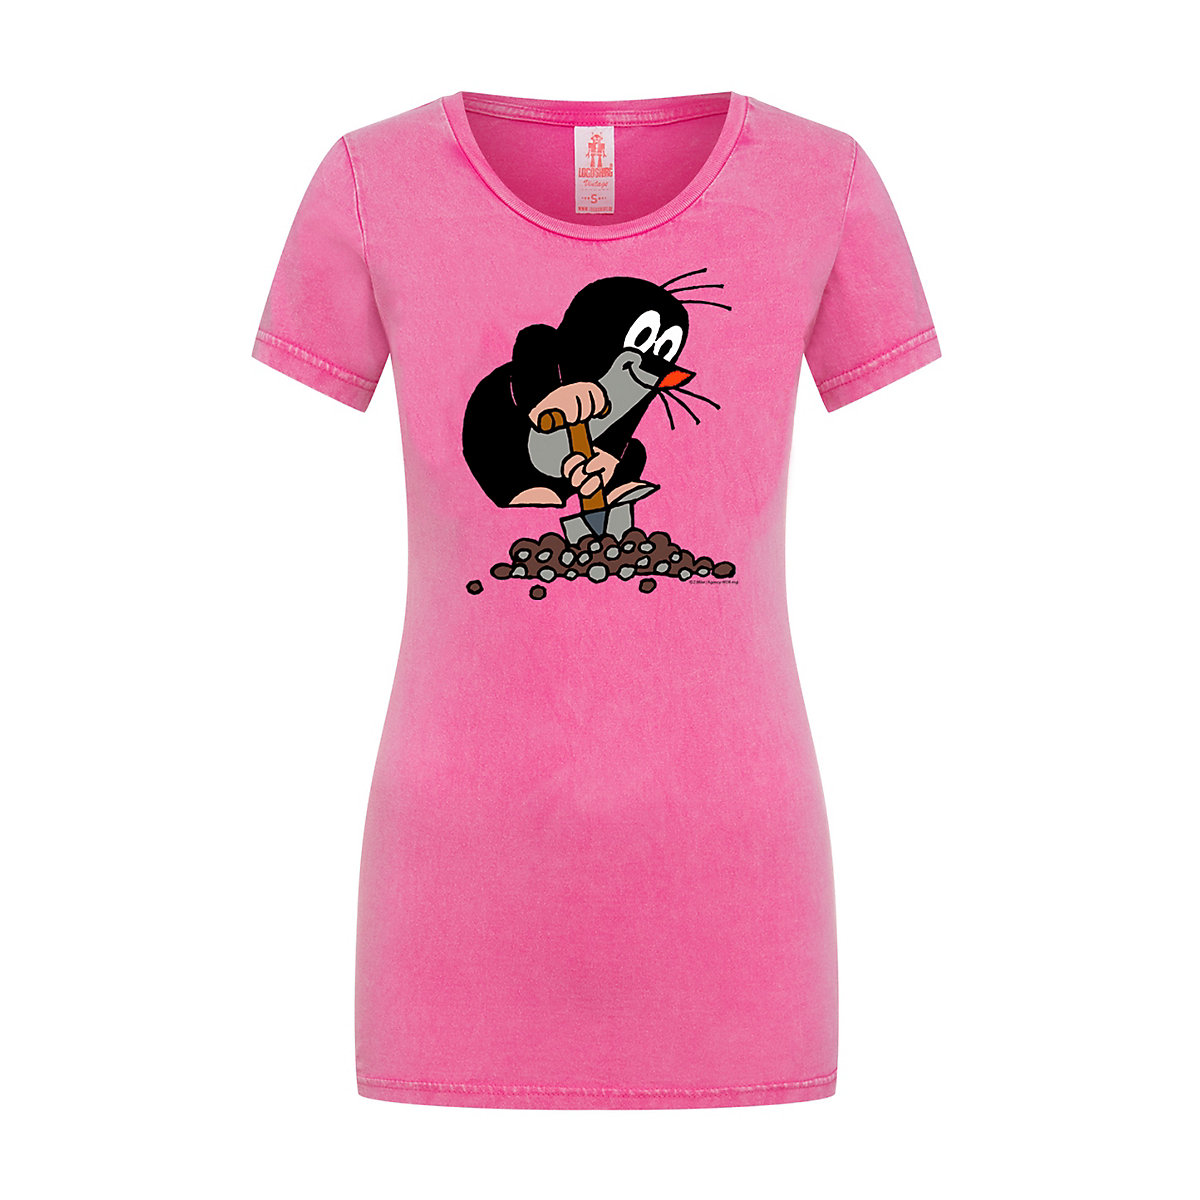 Logoshirt® Logoshirt T-Shirt pink